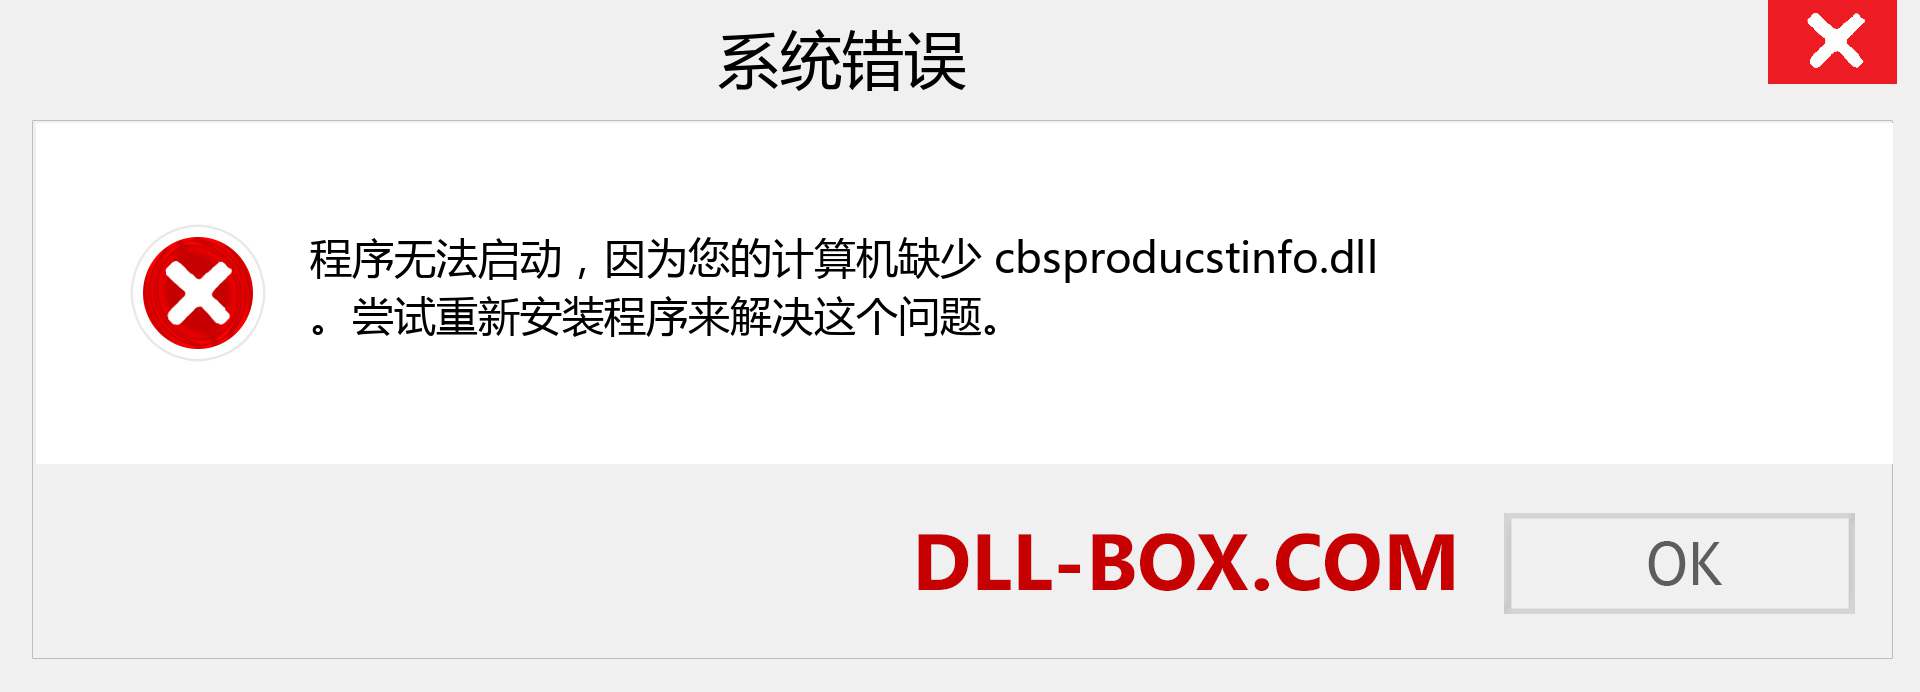 cbsproducstinfo.dll 文件丢失？。 适用于 Windows 7、8、10 的下载 - 修复 Windows、照片、图像上的 cbsproducstinfo dll 丢失错误